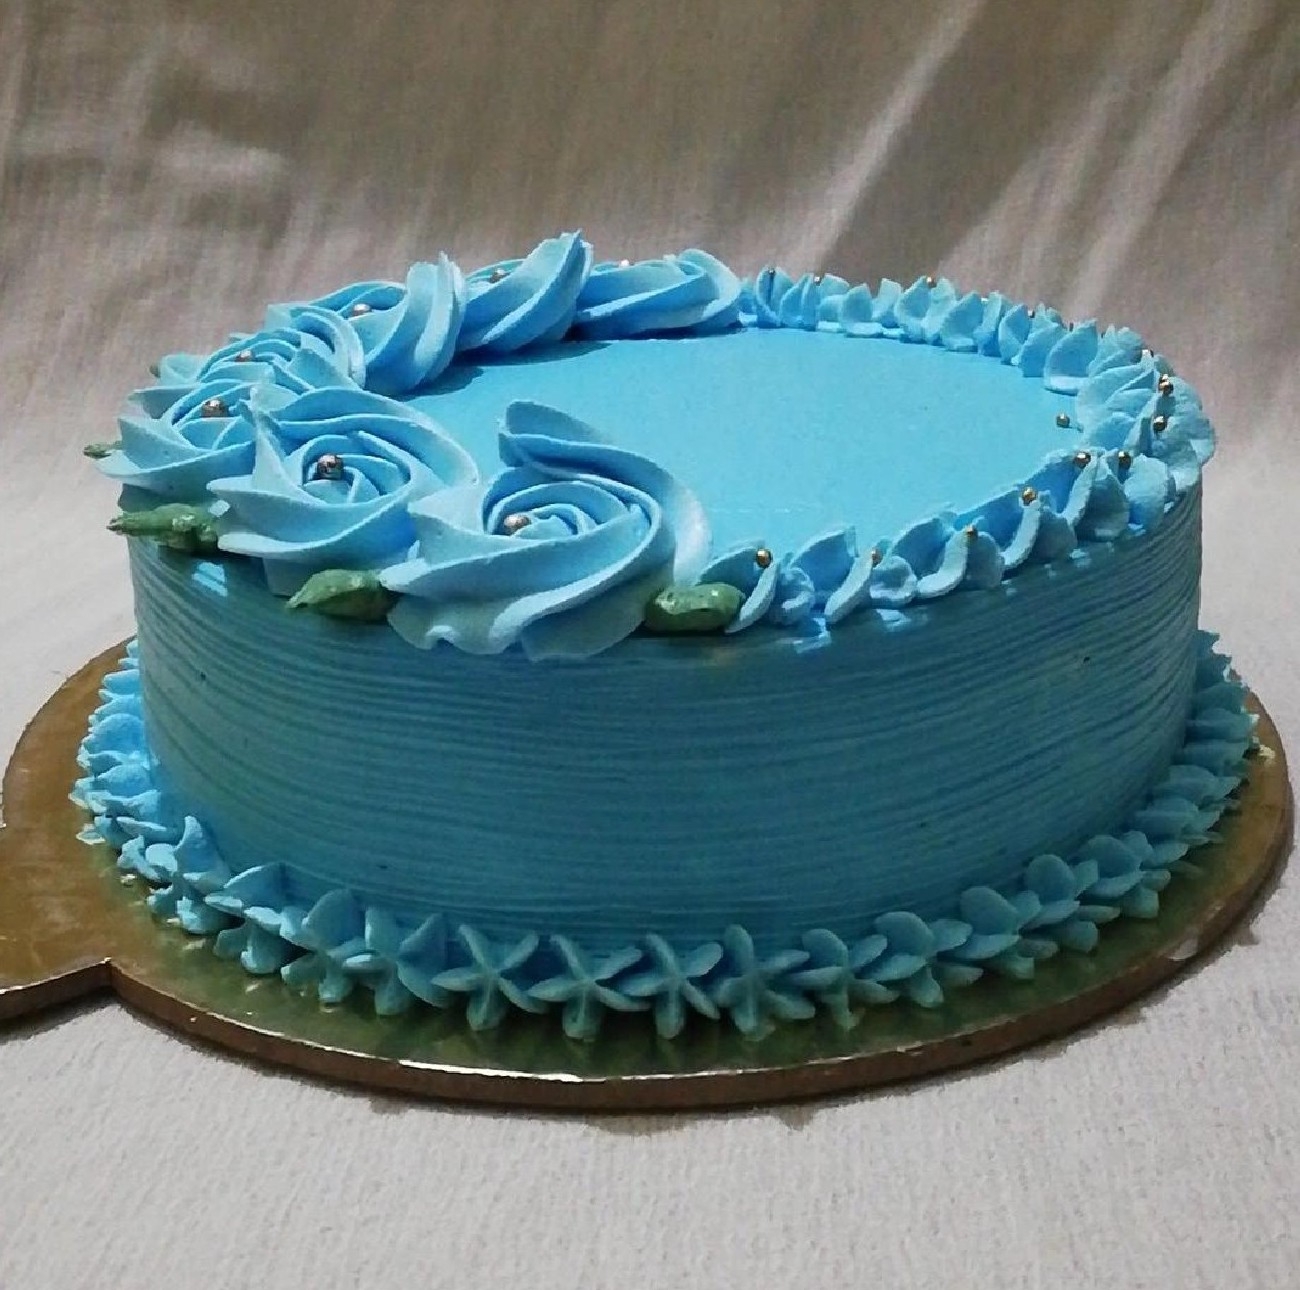 Buttercream Rose Birthday Cake - Cake House Online